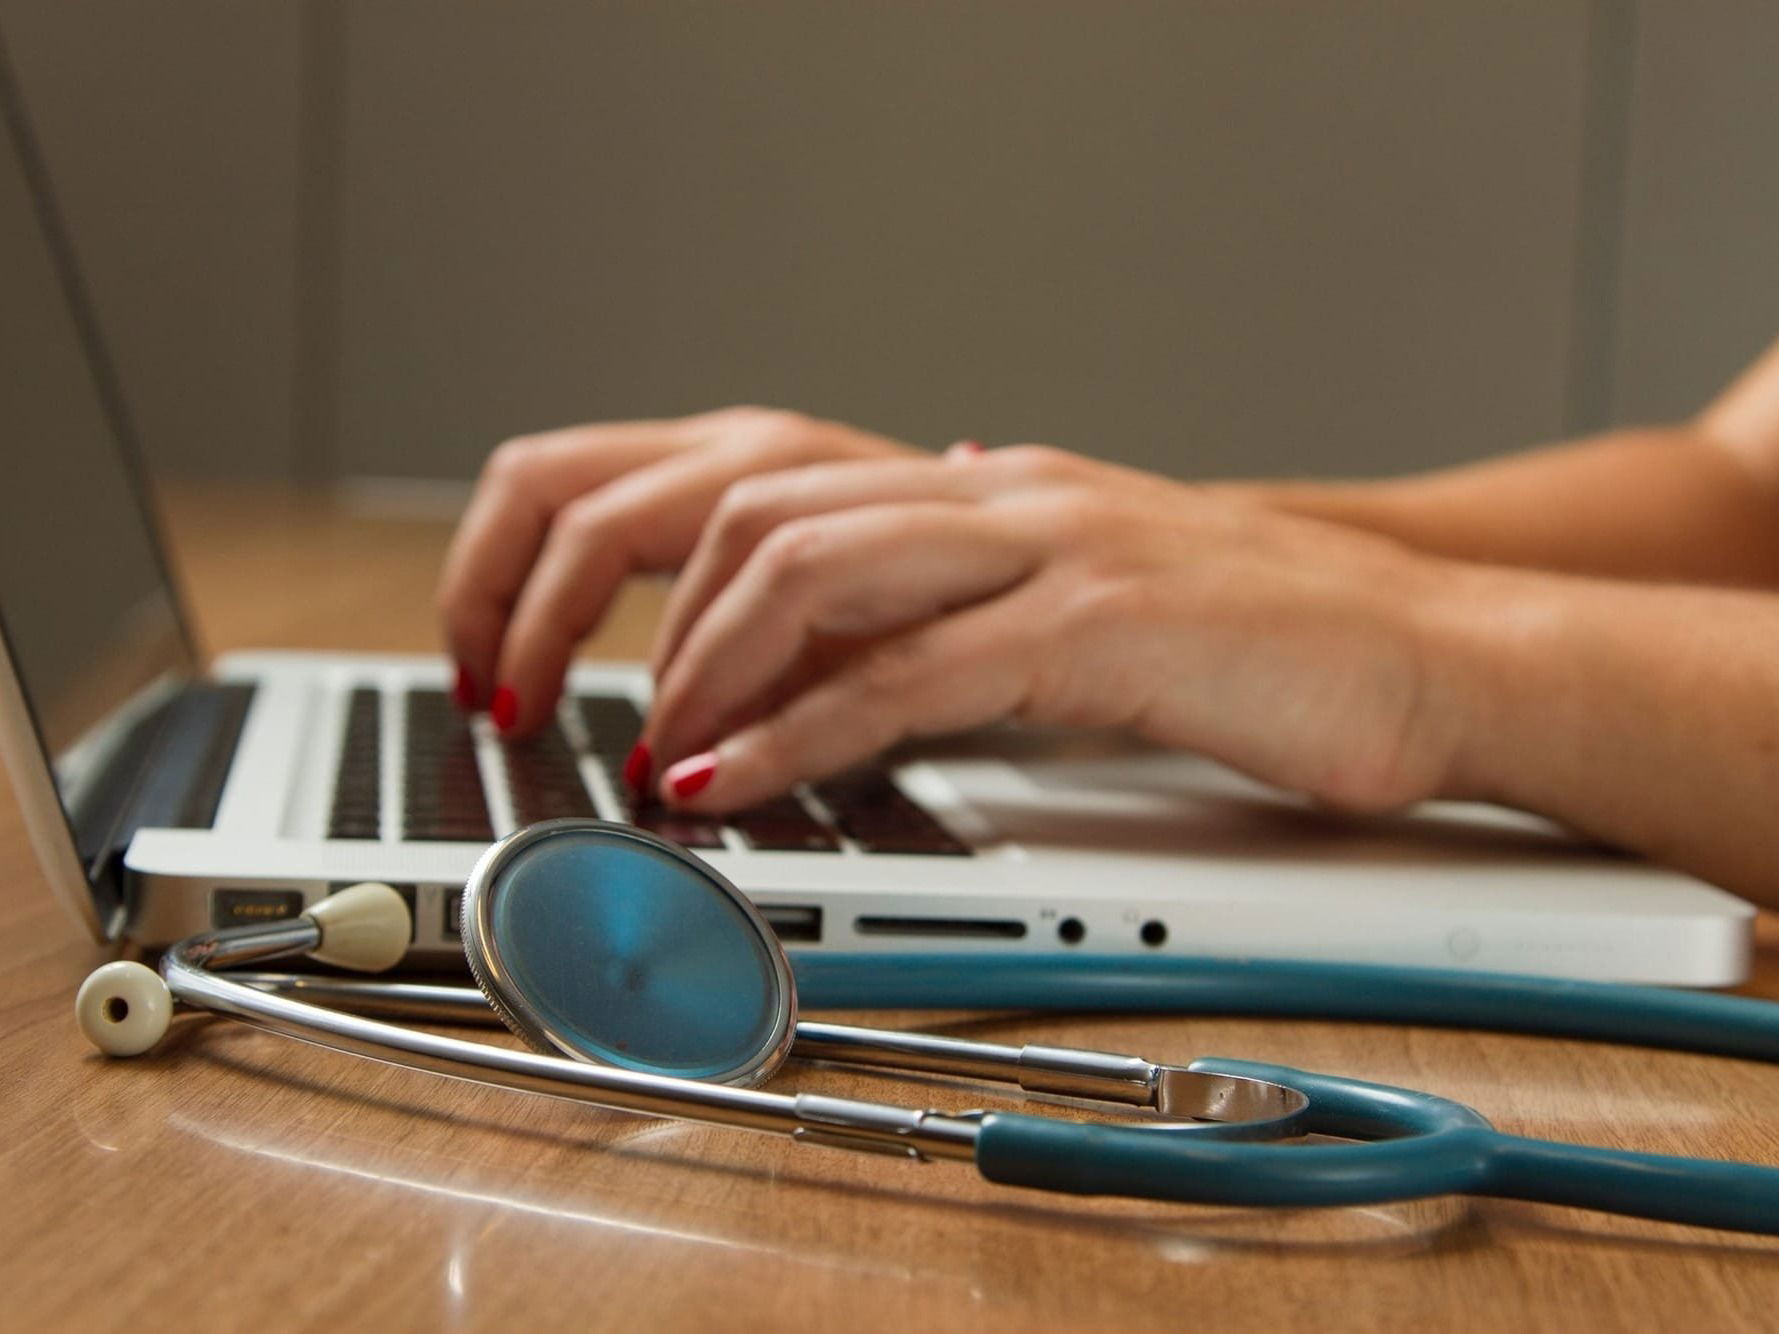 Gesundheitsministerium muss Verzögerung bei der Digitalisierung von Krankendaten einräumen